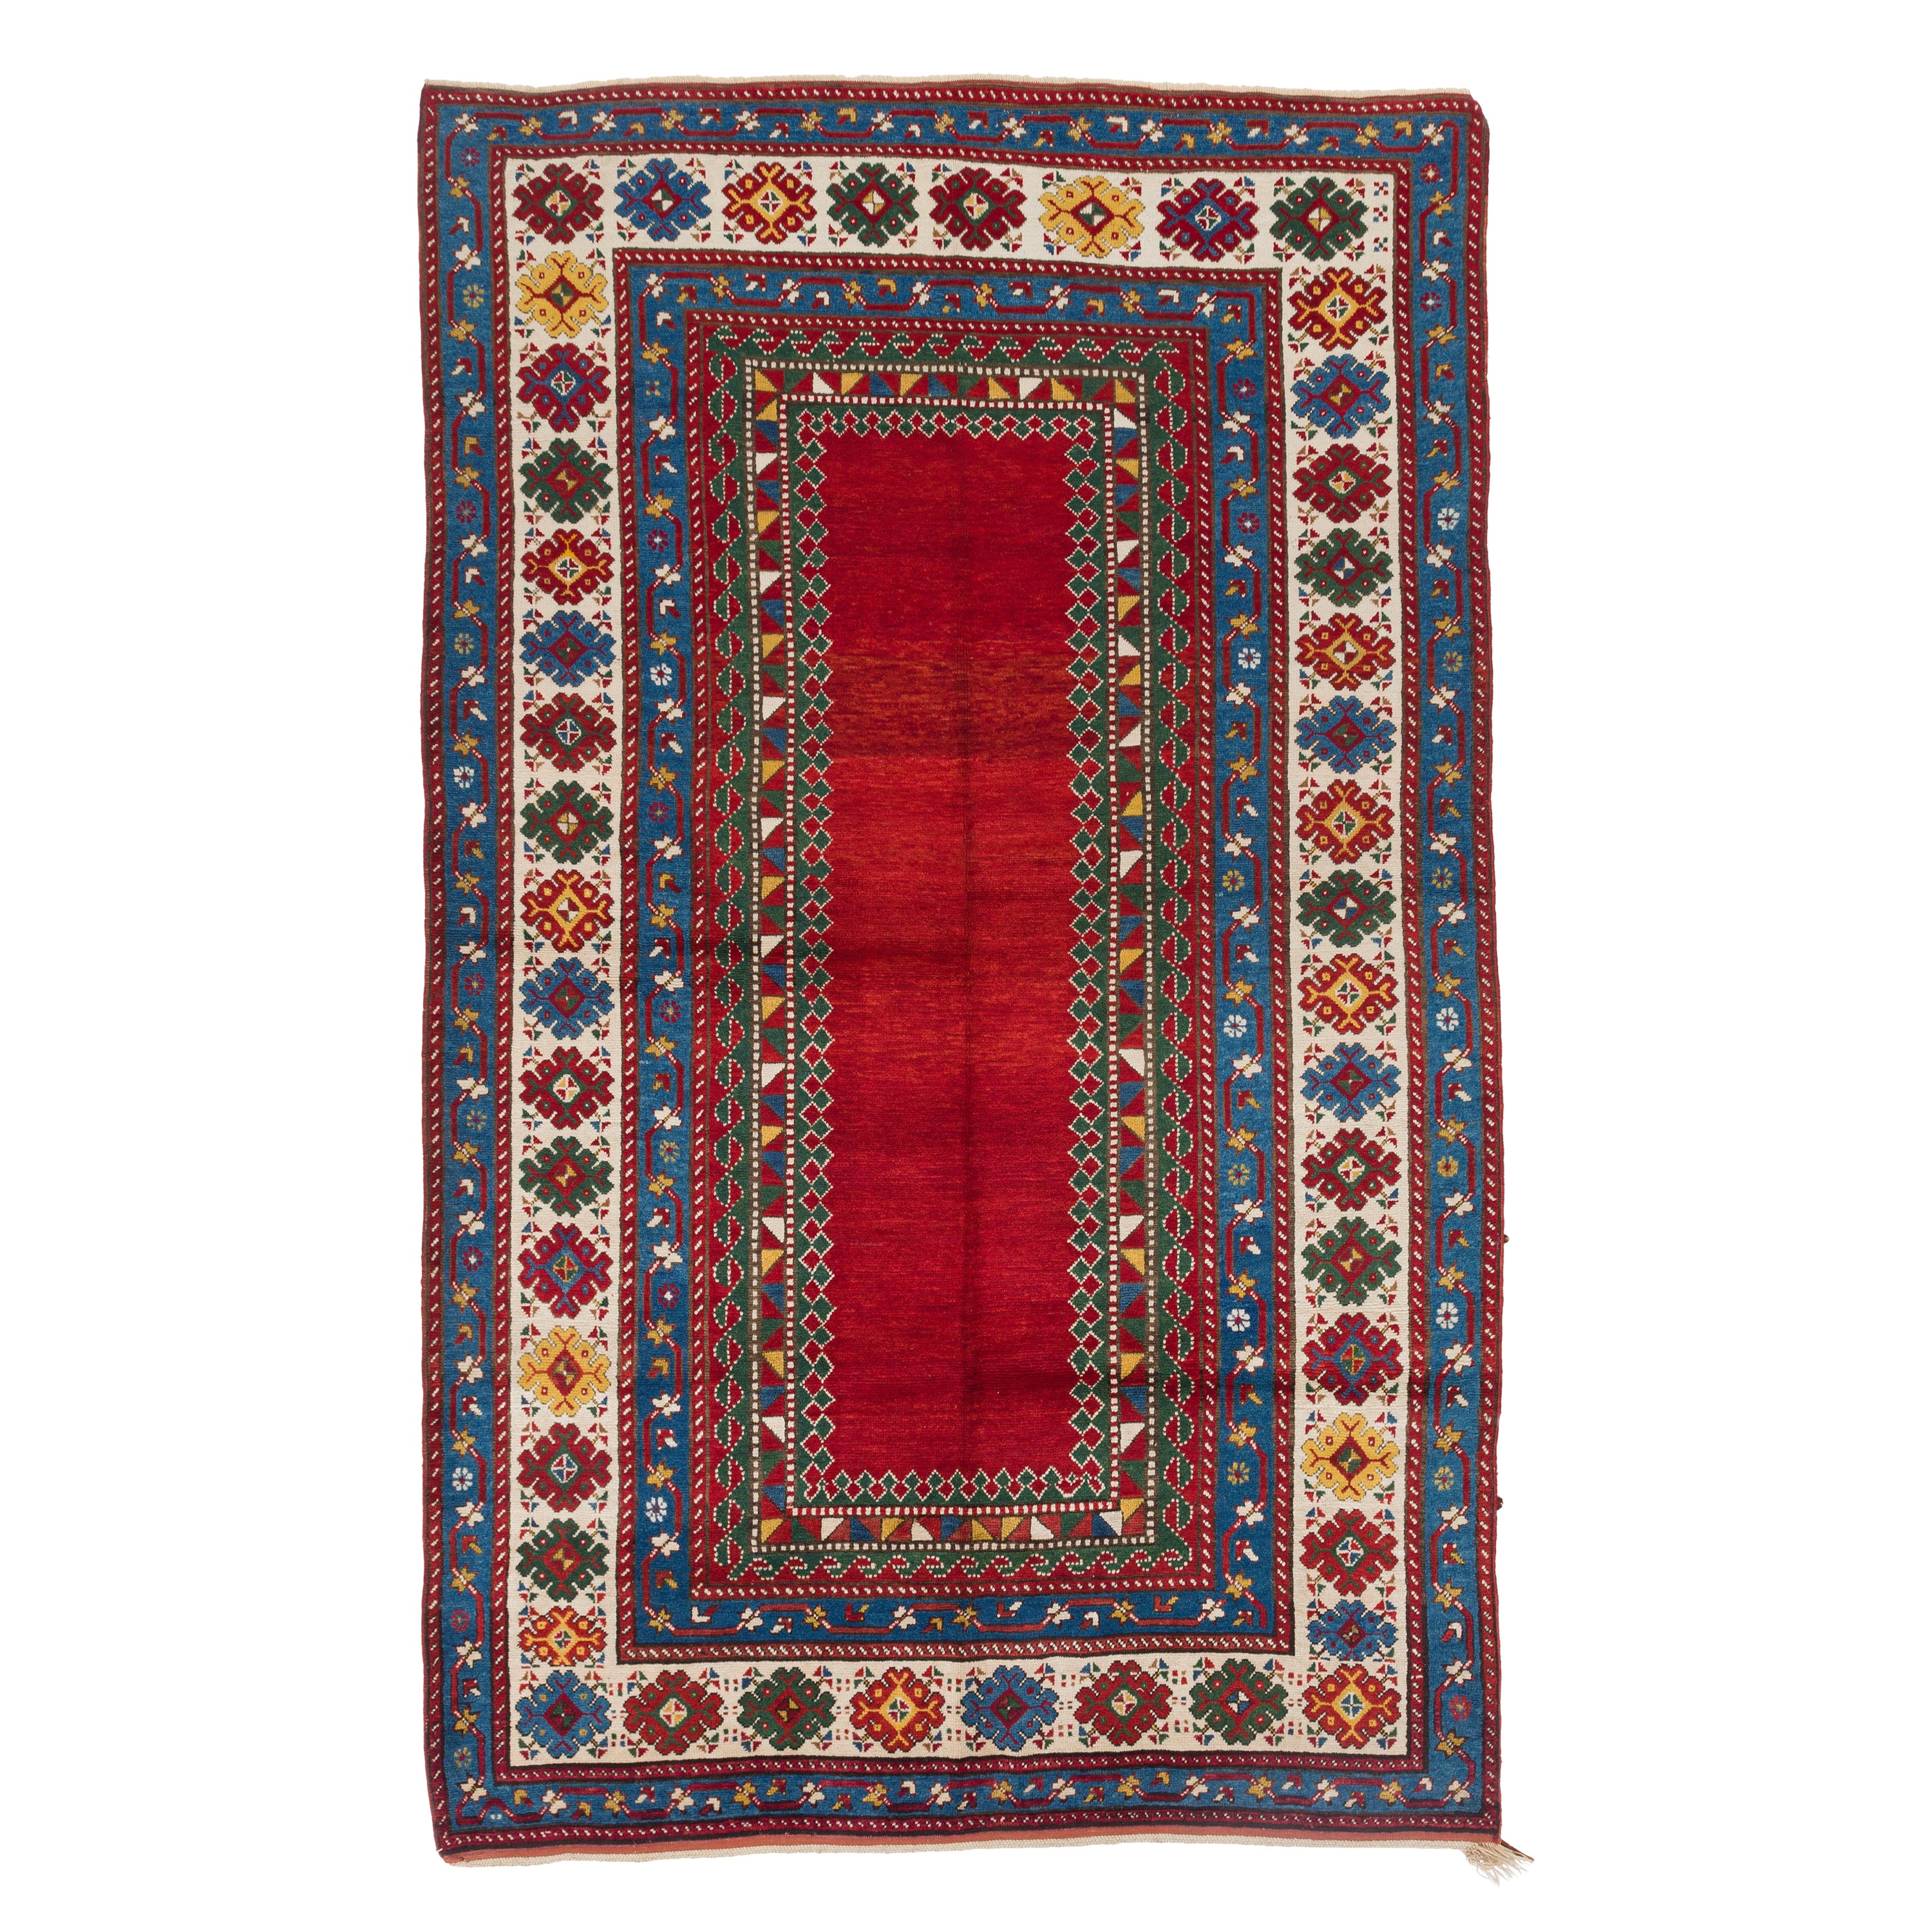 Tapis Kazak caucasien ancien de 5,9 x 9,3 pieds, vers 1880, 100 % laine et teintures naturelles